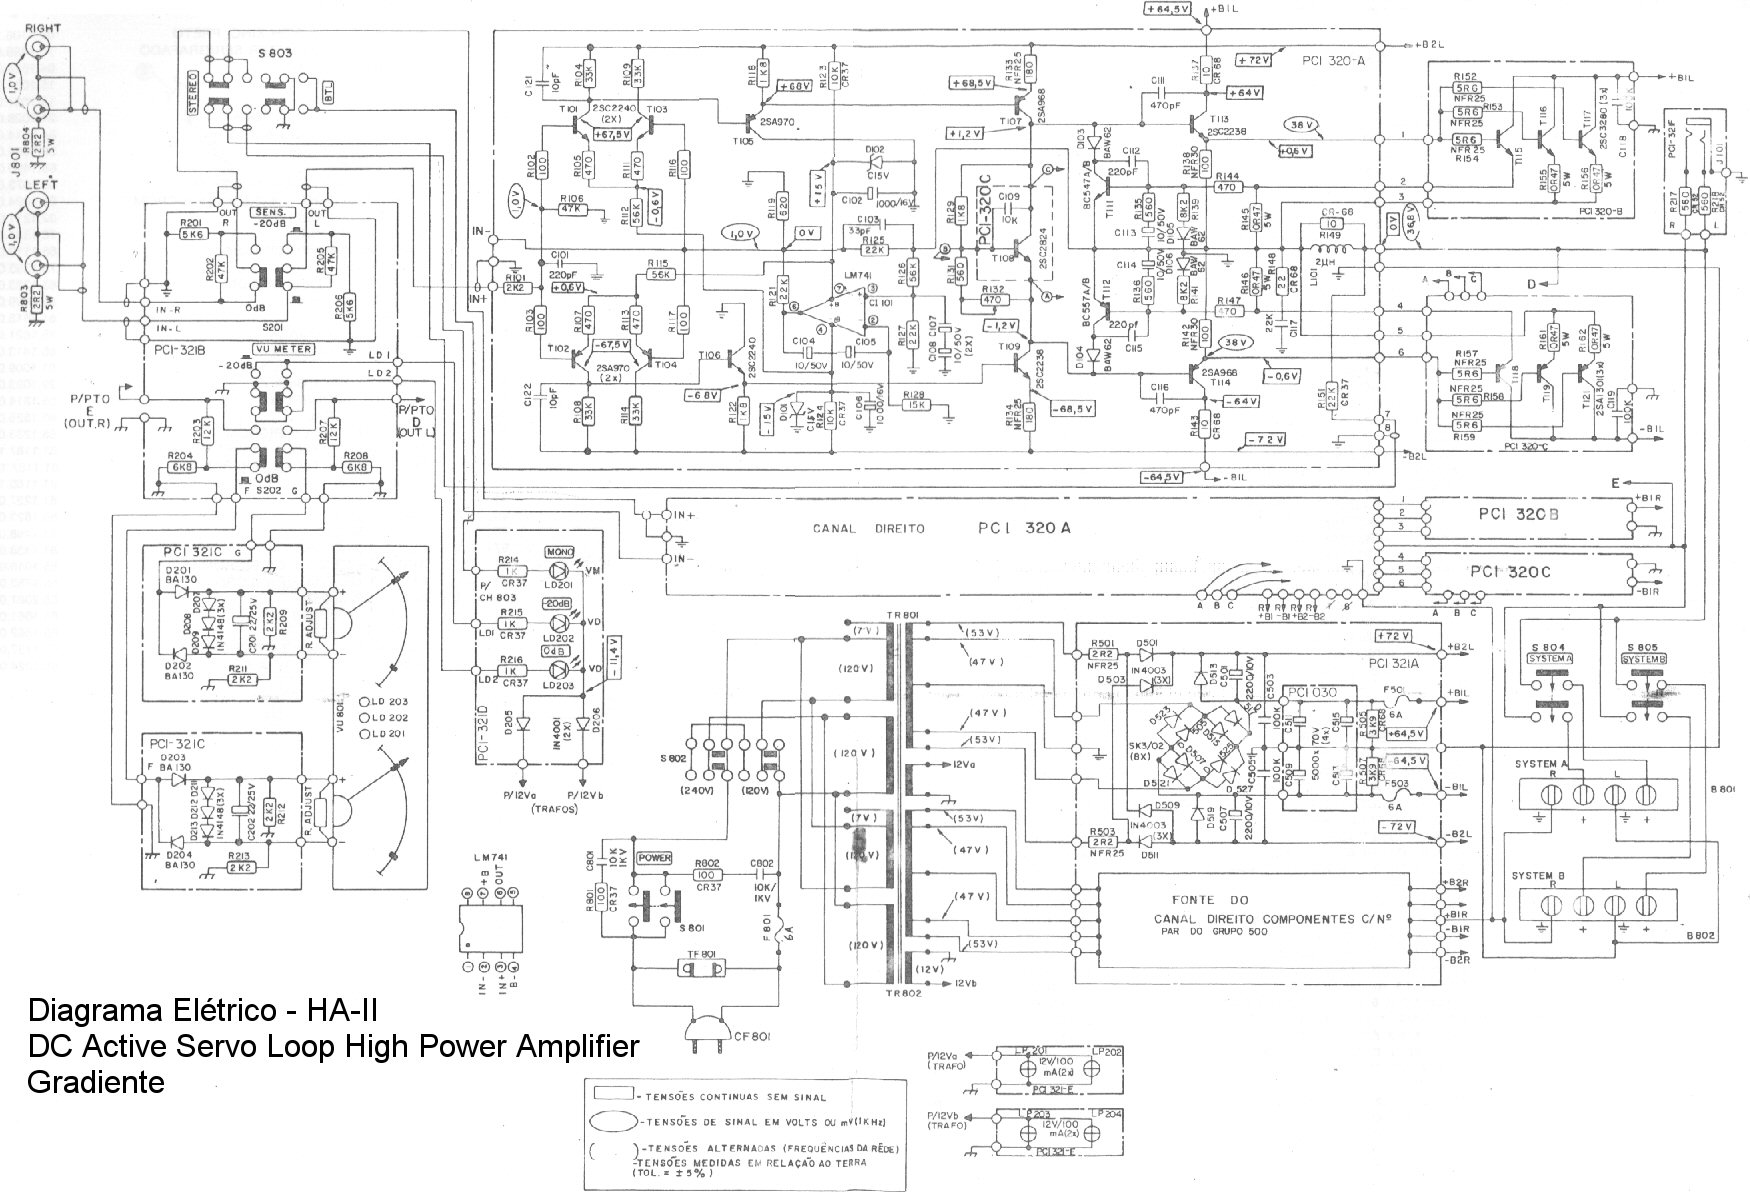 Gradiente HA-II Gradiente Amplifier HA-II Schematic